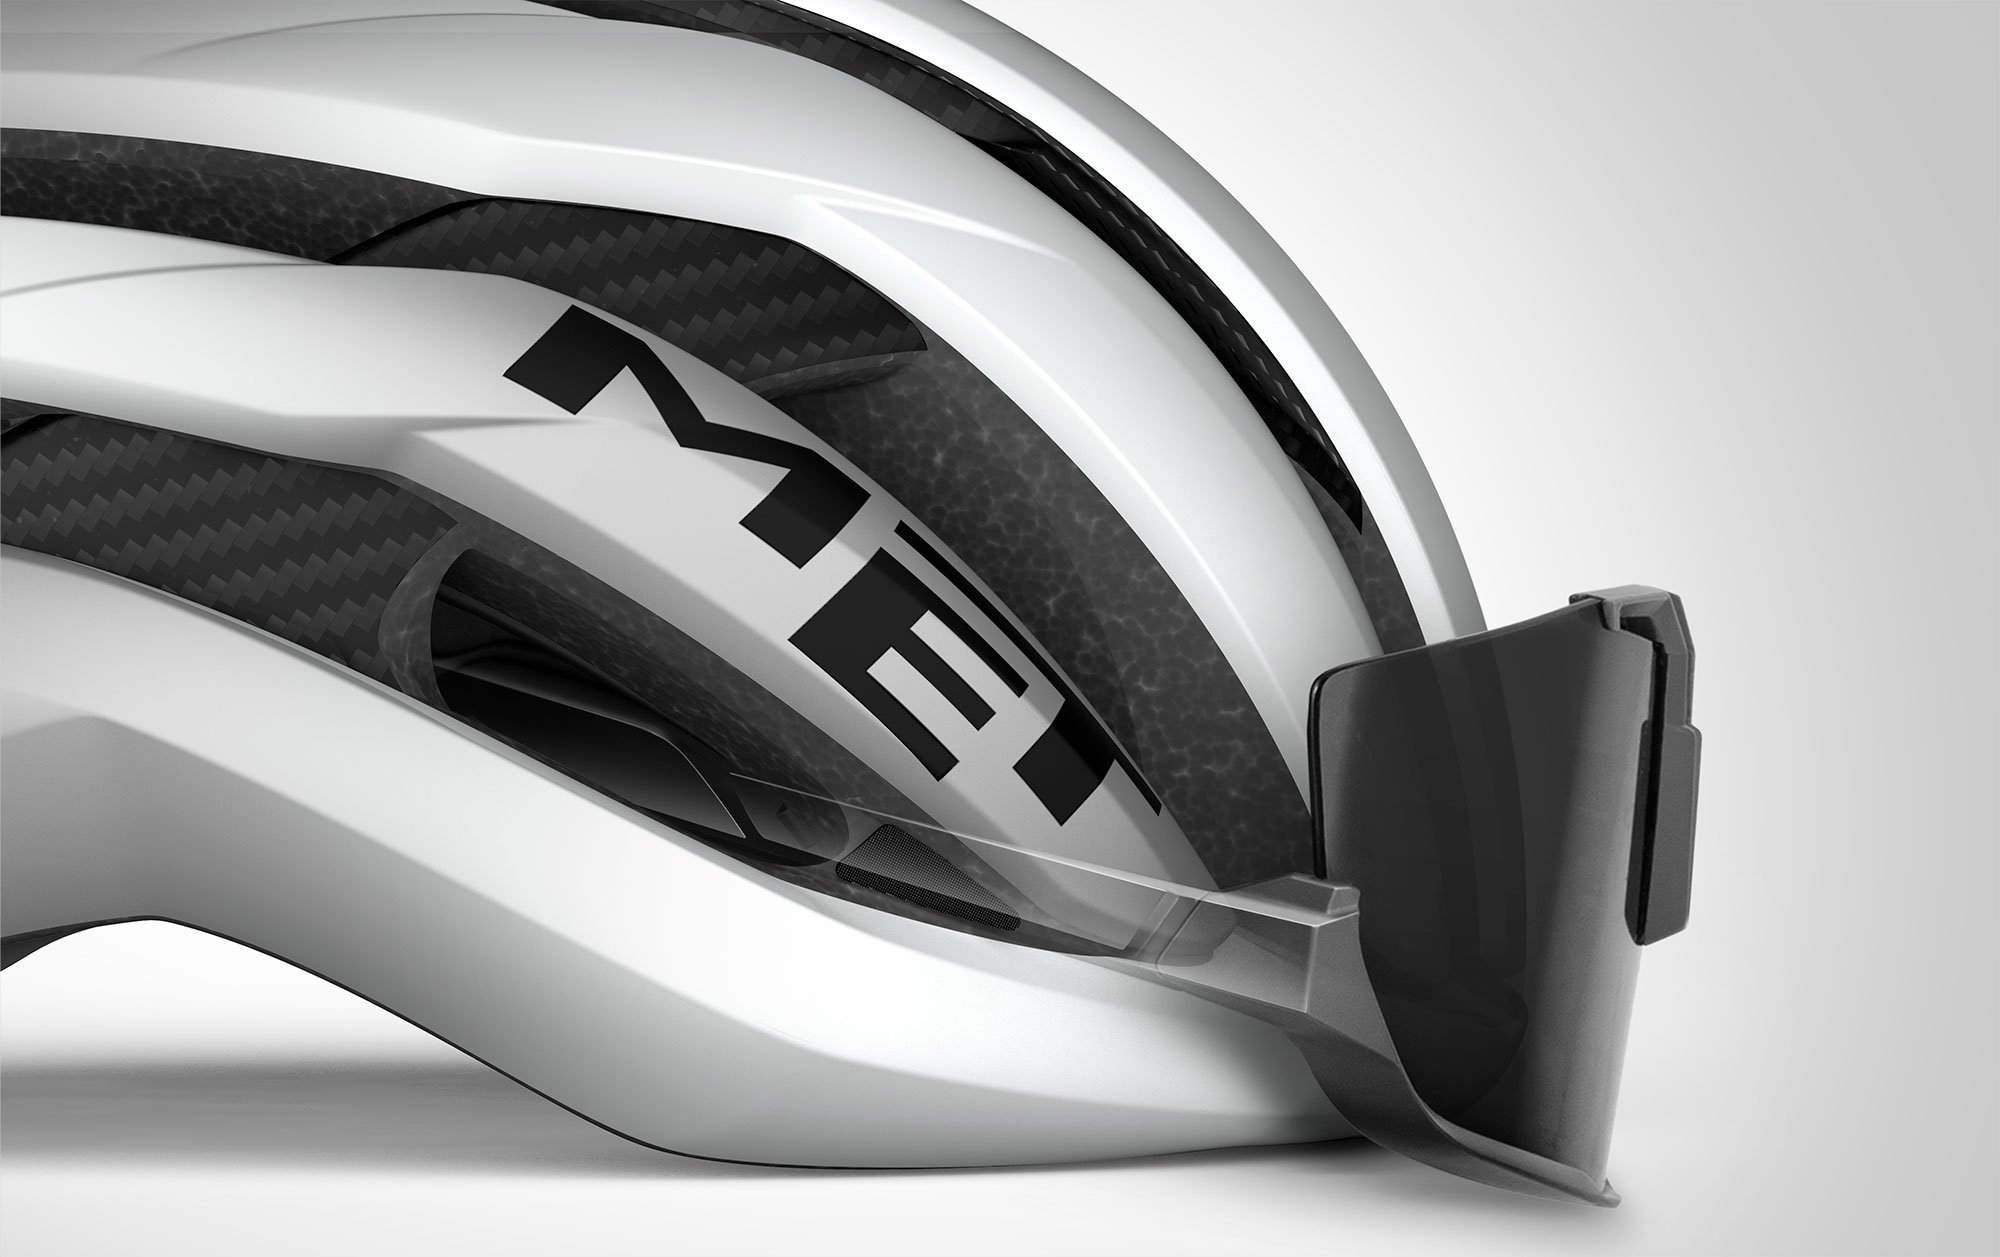 MET Trenta 3K Carbon Mips Road, Aero, Cyclocross and Gravel Helmet